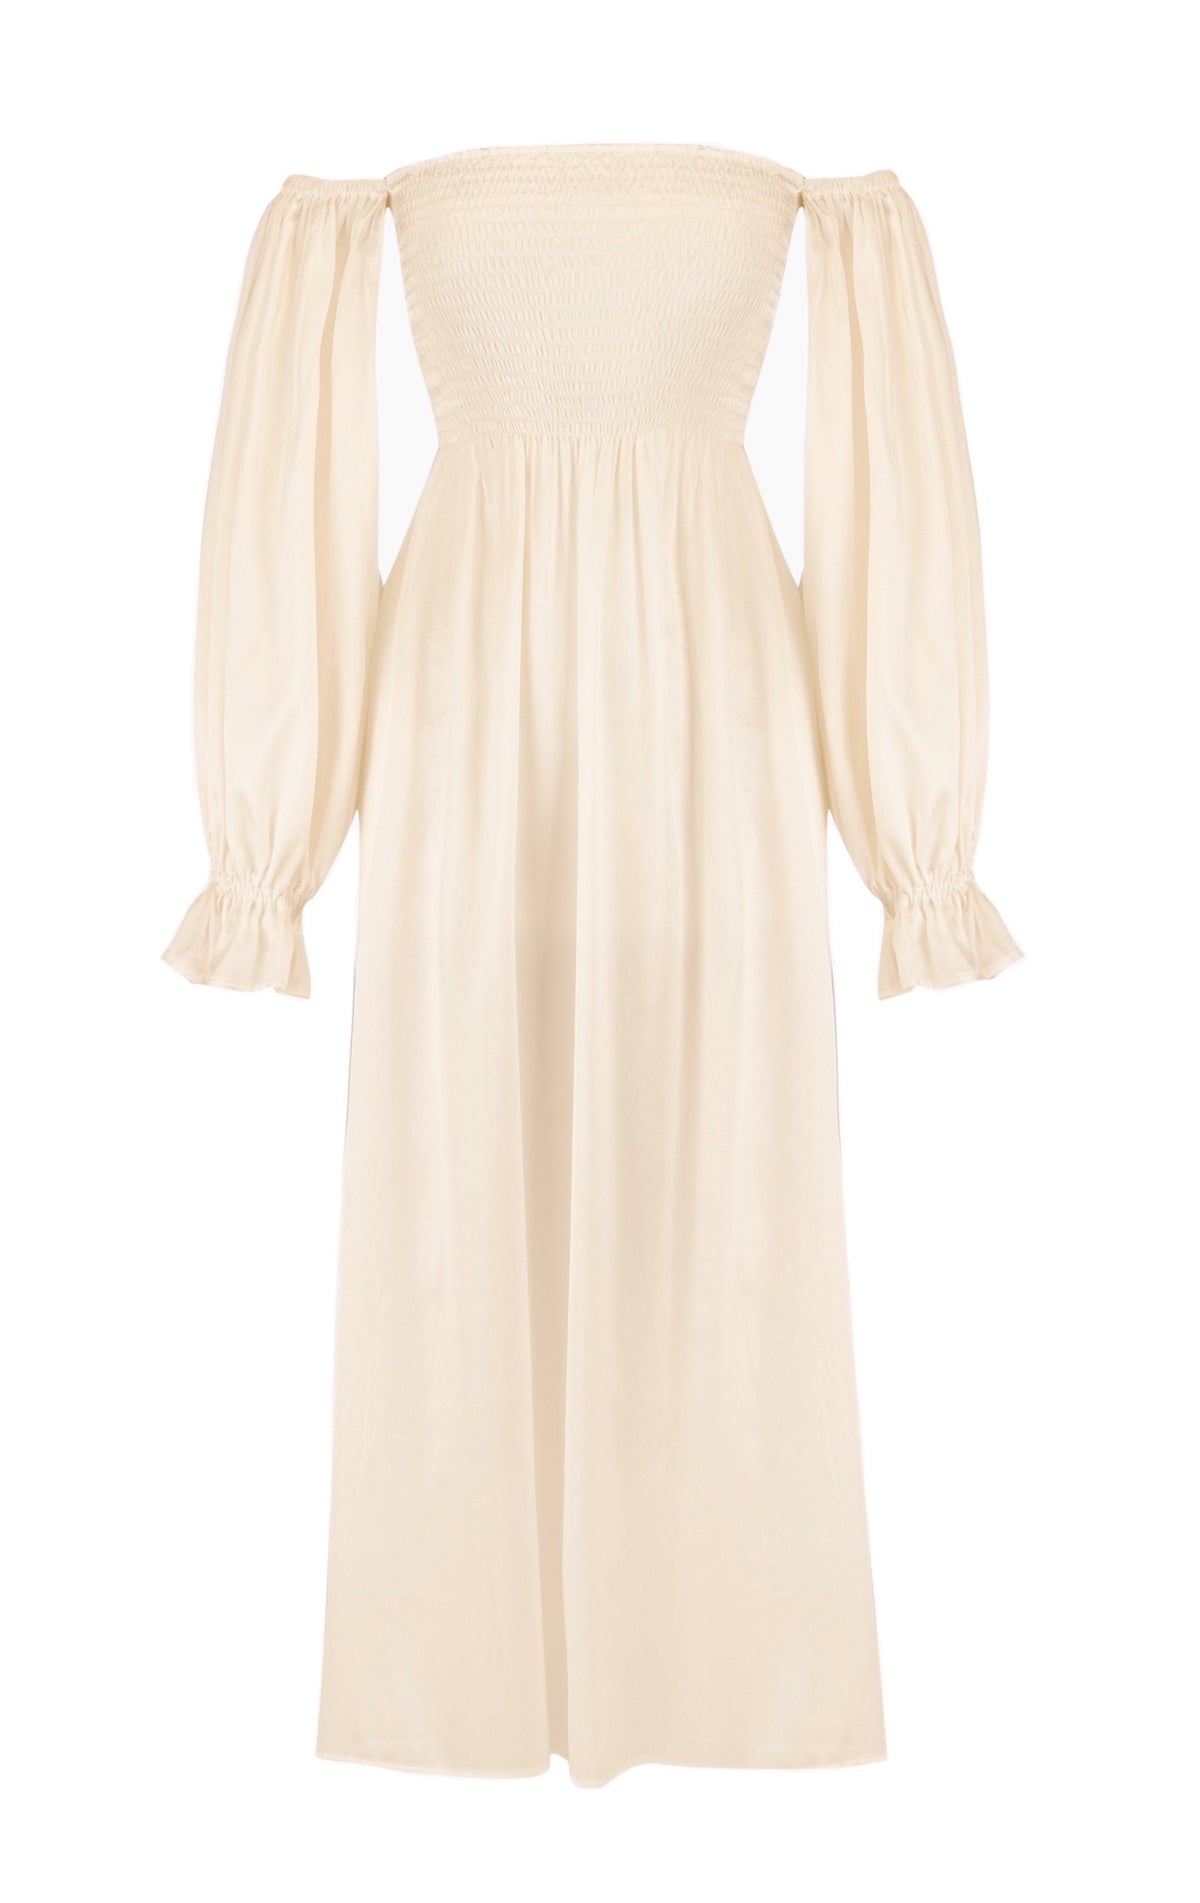 Atlanta Silk Dress in Pearl White